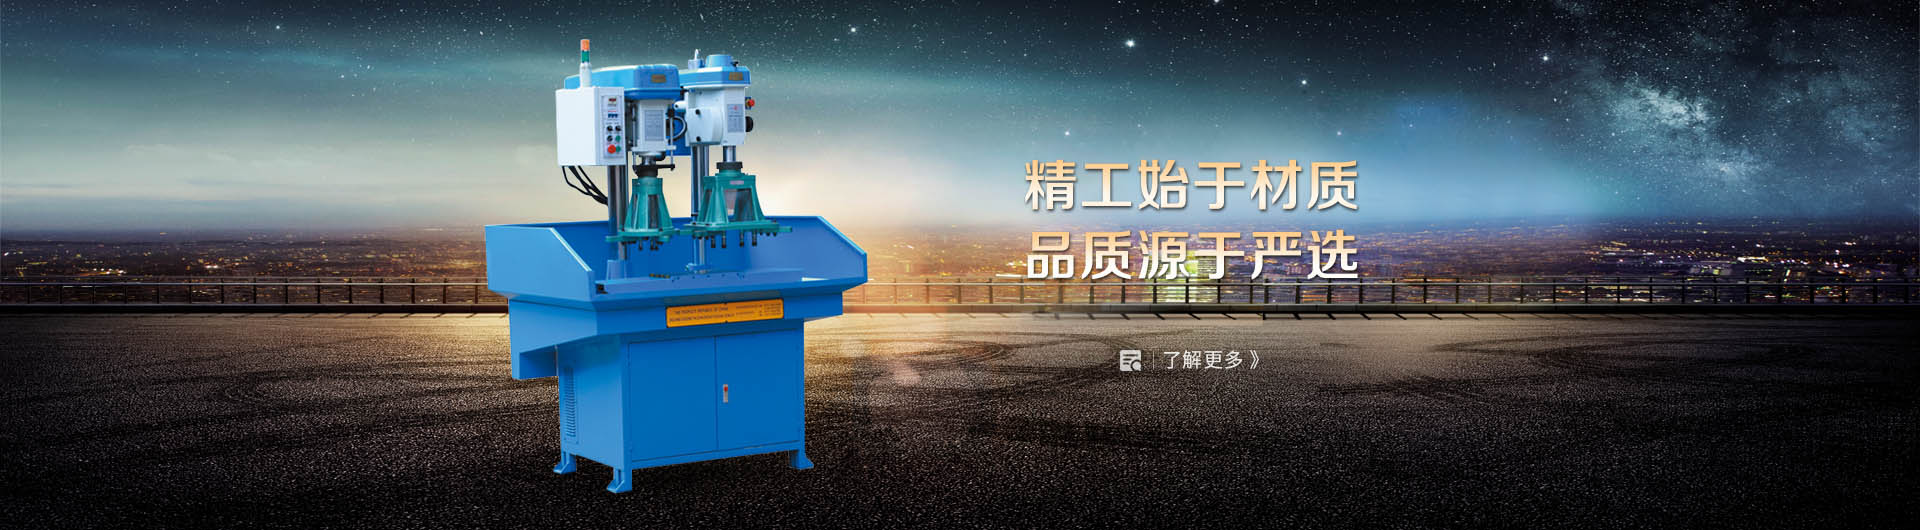 Zhejiang Yongxing Bench Orill Manufacturing Co.,Ltd.